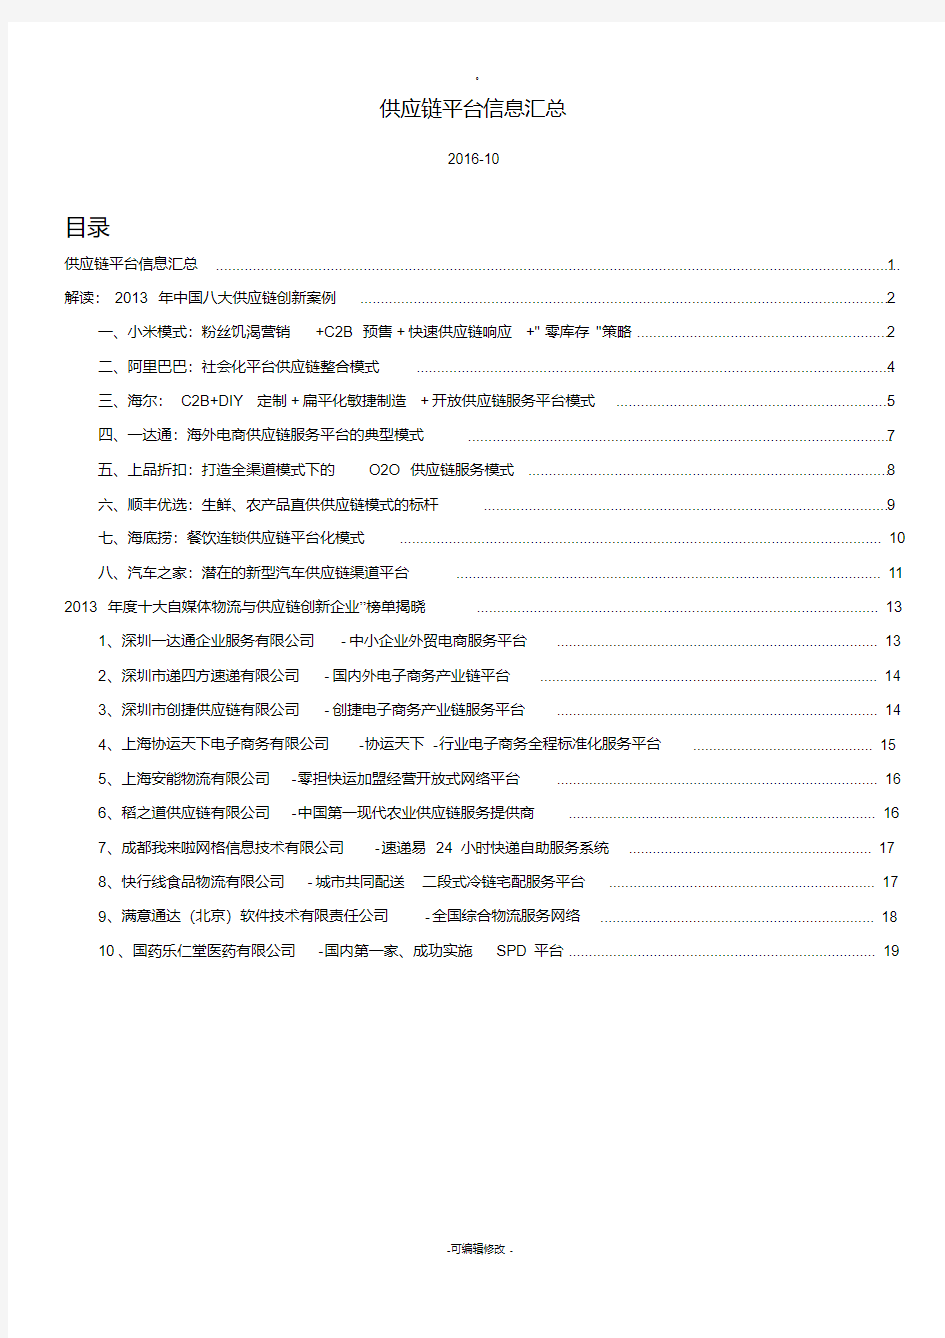 中国八大供应链创新案例(20200426143150)